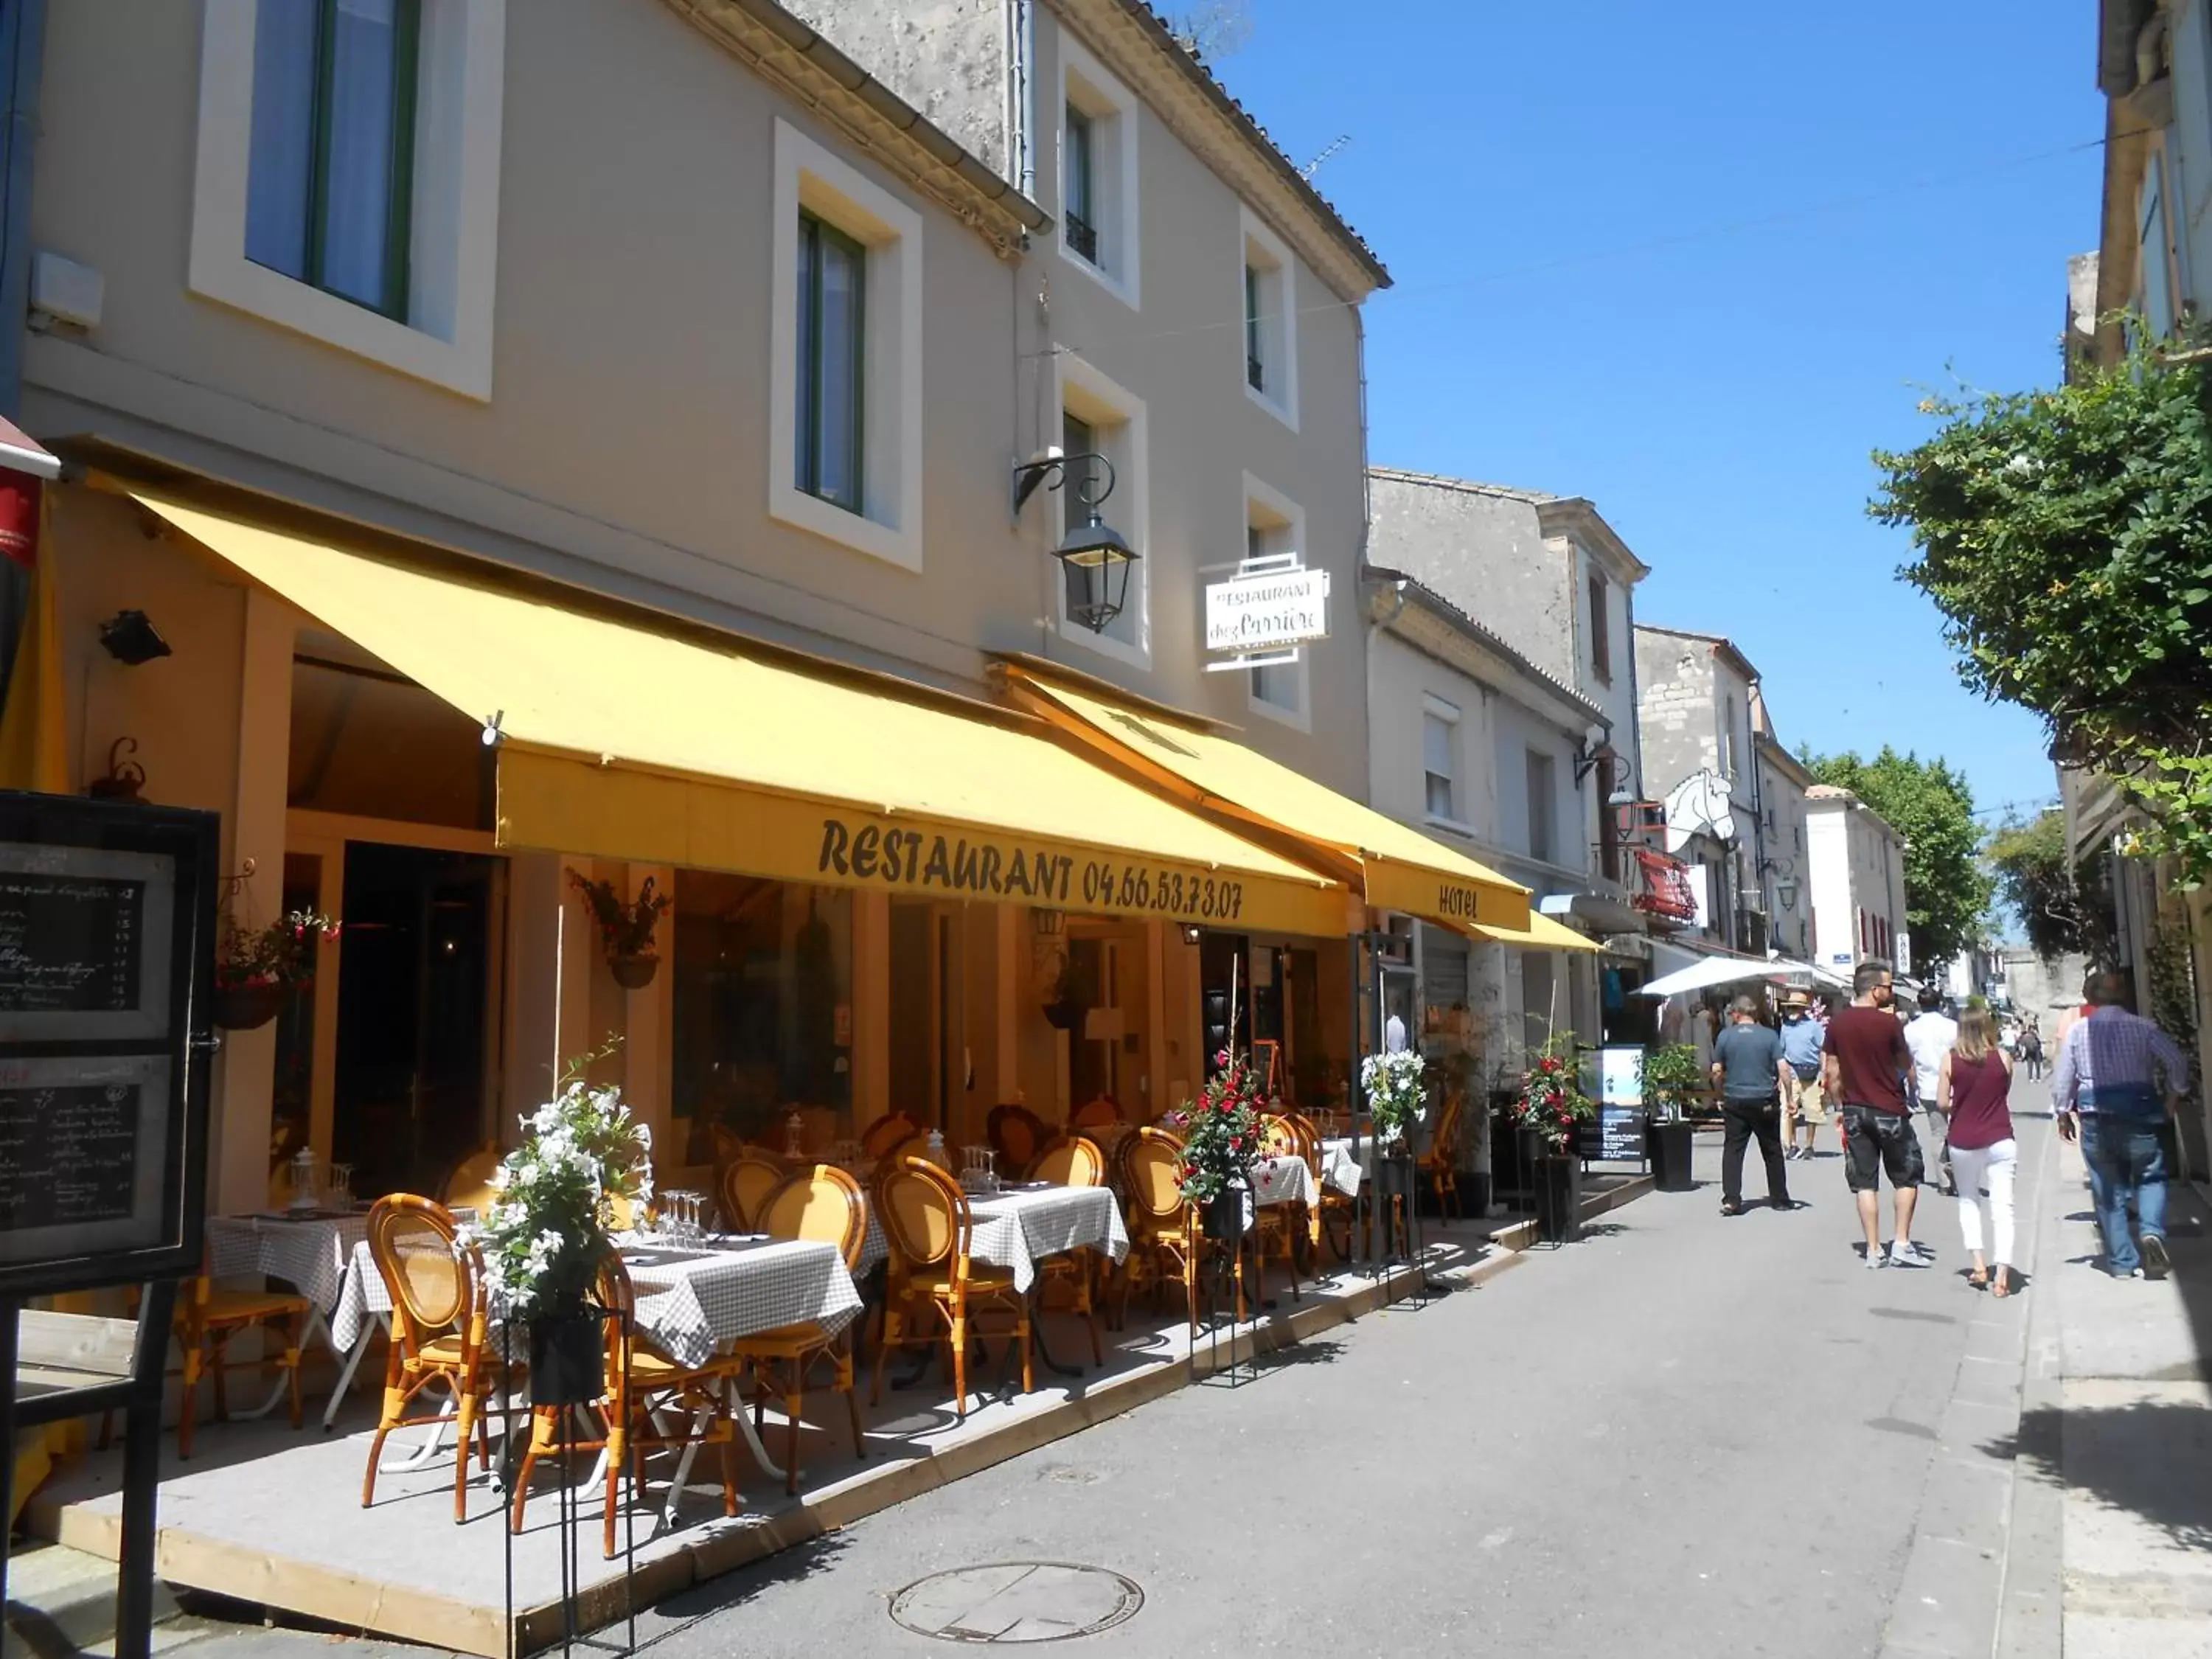 Property building, Restaurant/Places to Eat in Hôtel-Restaurant "Chez Carrière"